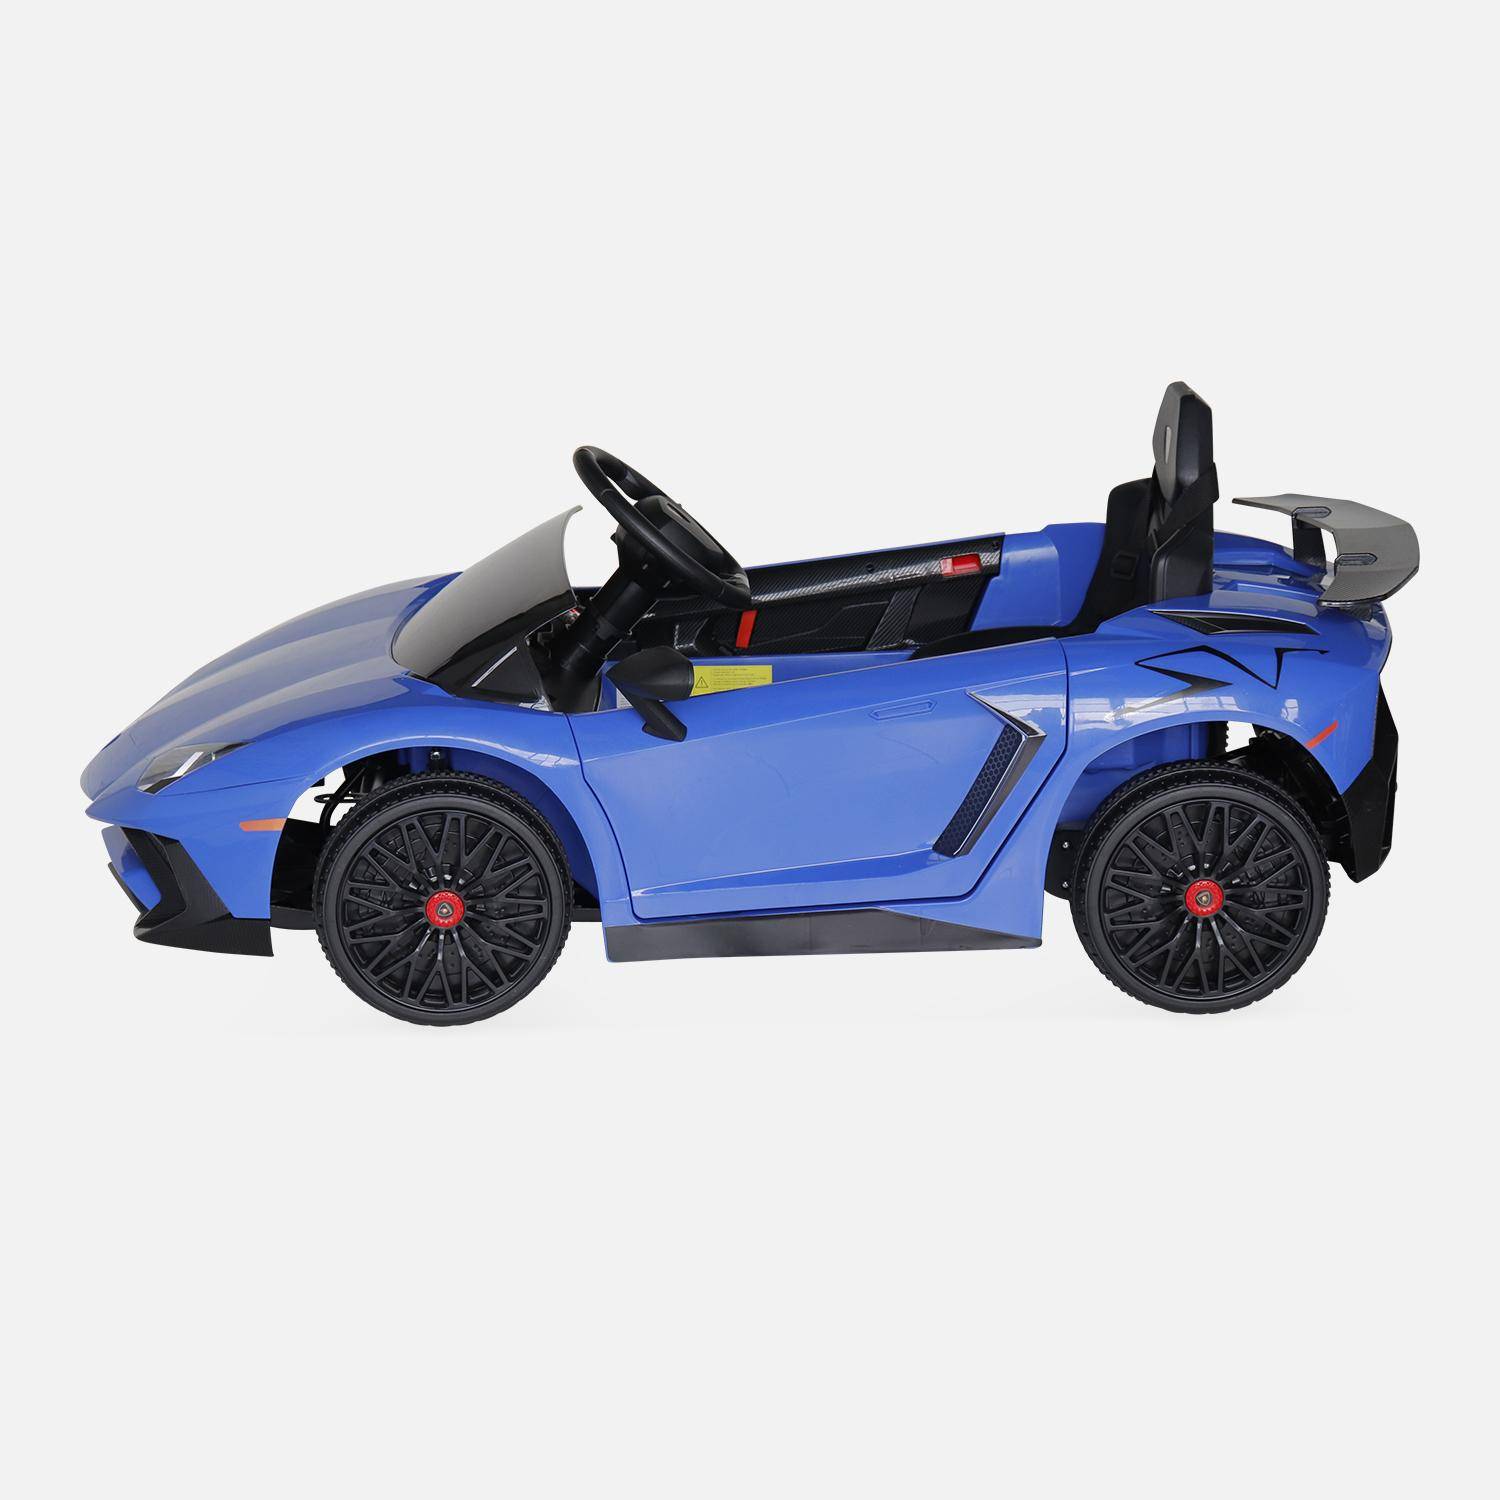 12V elektrische Lamborghini kinderauto, blauw, 1 zitplaats, met radio, afstandsbediening, MP3, USB-poort en functionele koplampen,sweeek,Photo5